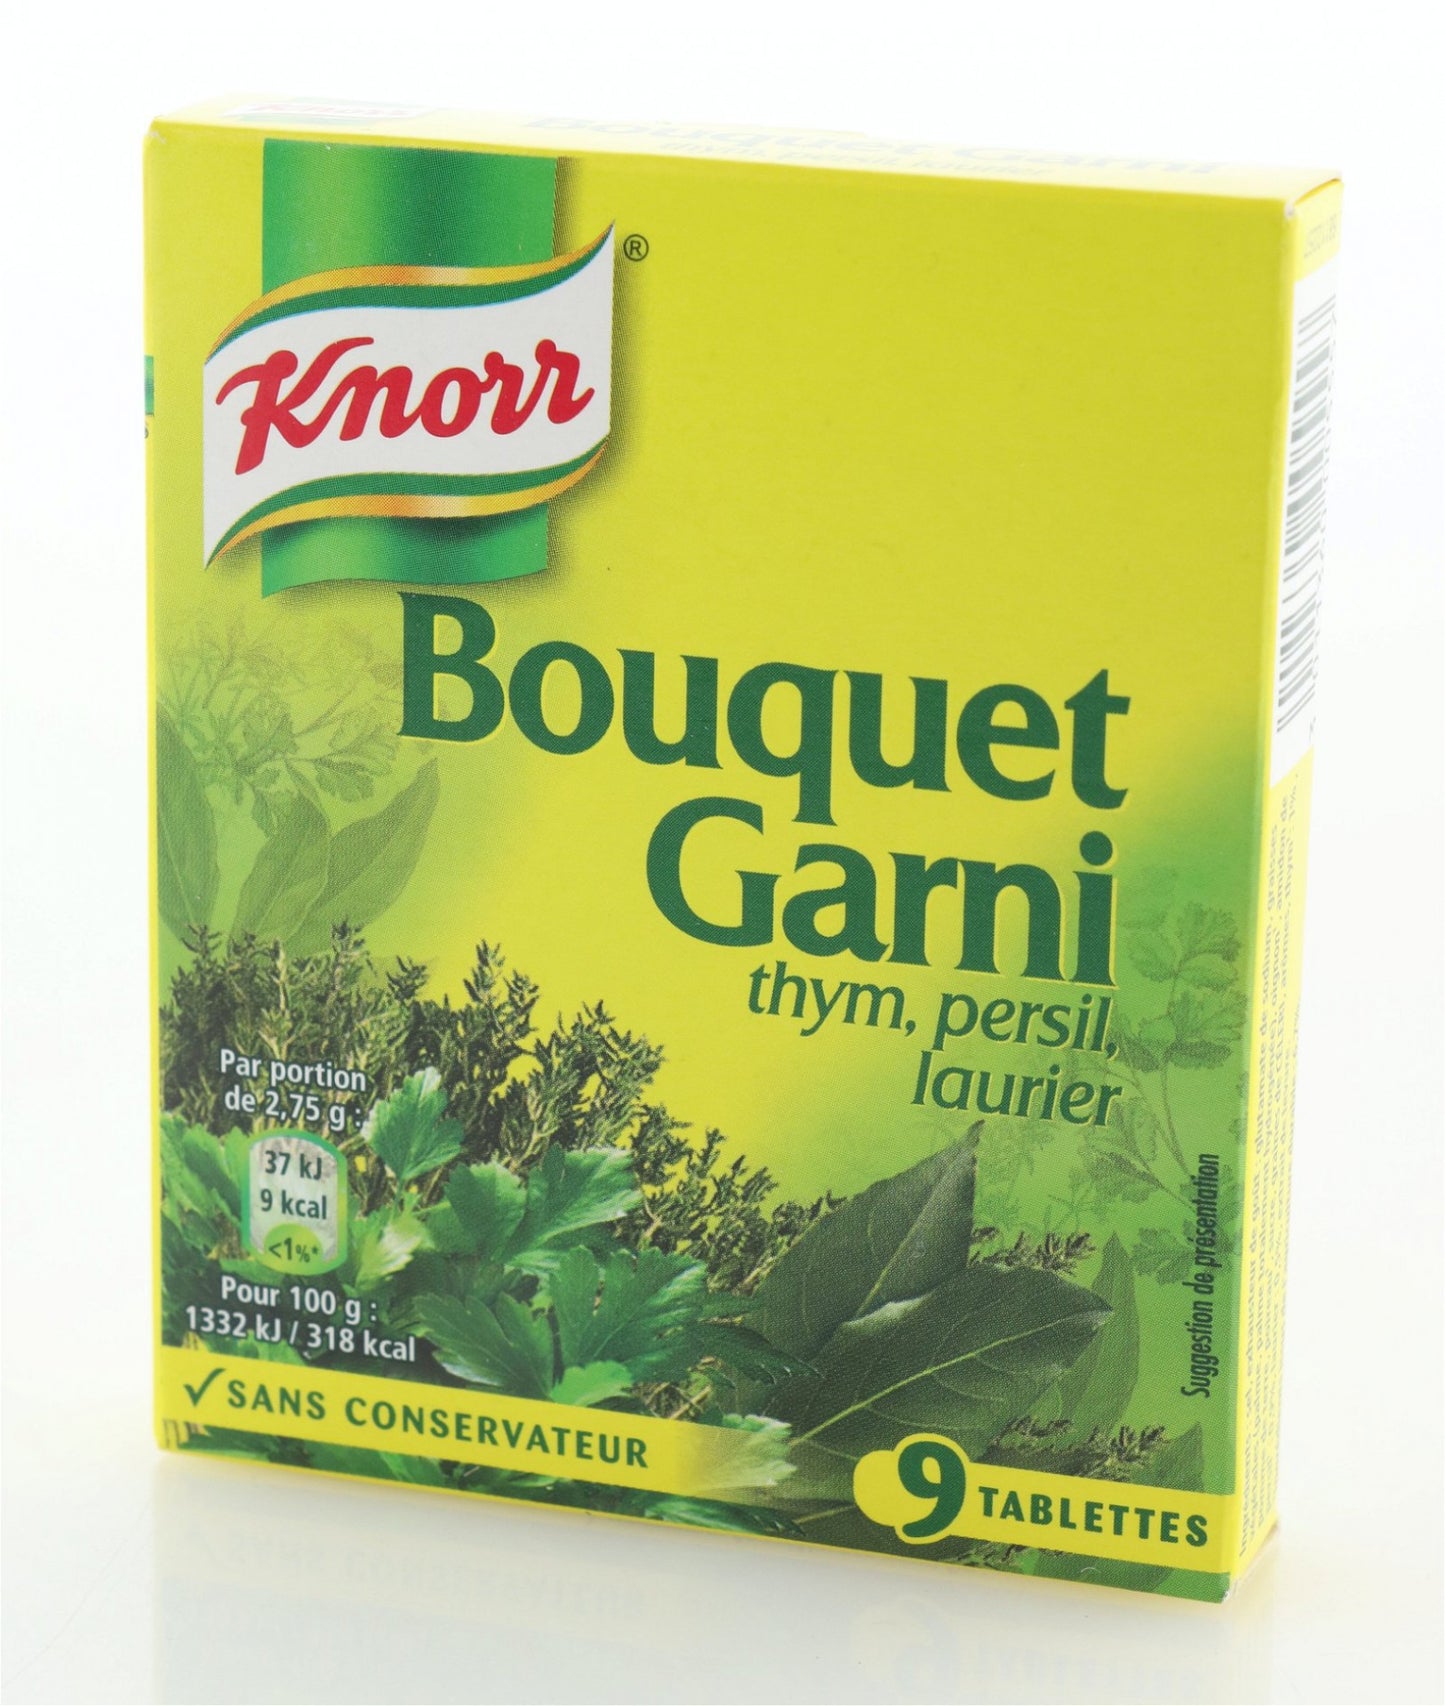 Knorr Bouquet Garni 9 x 11g = 99g